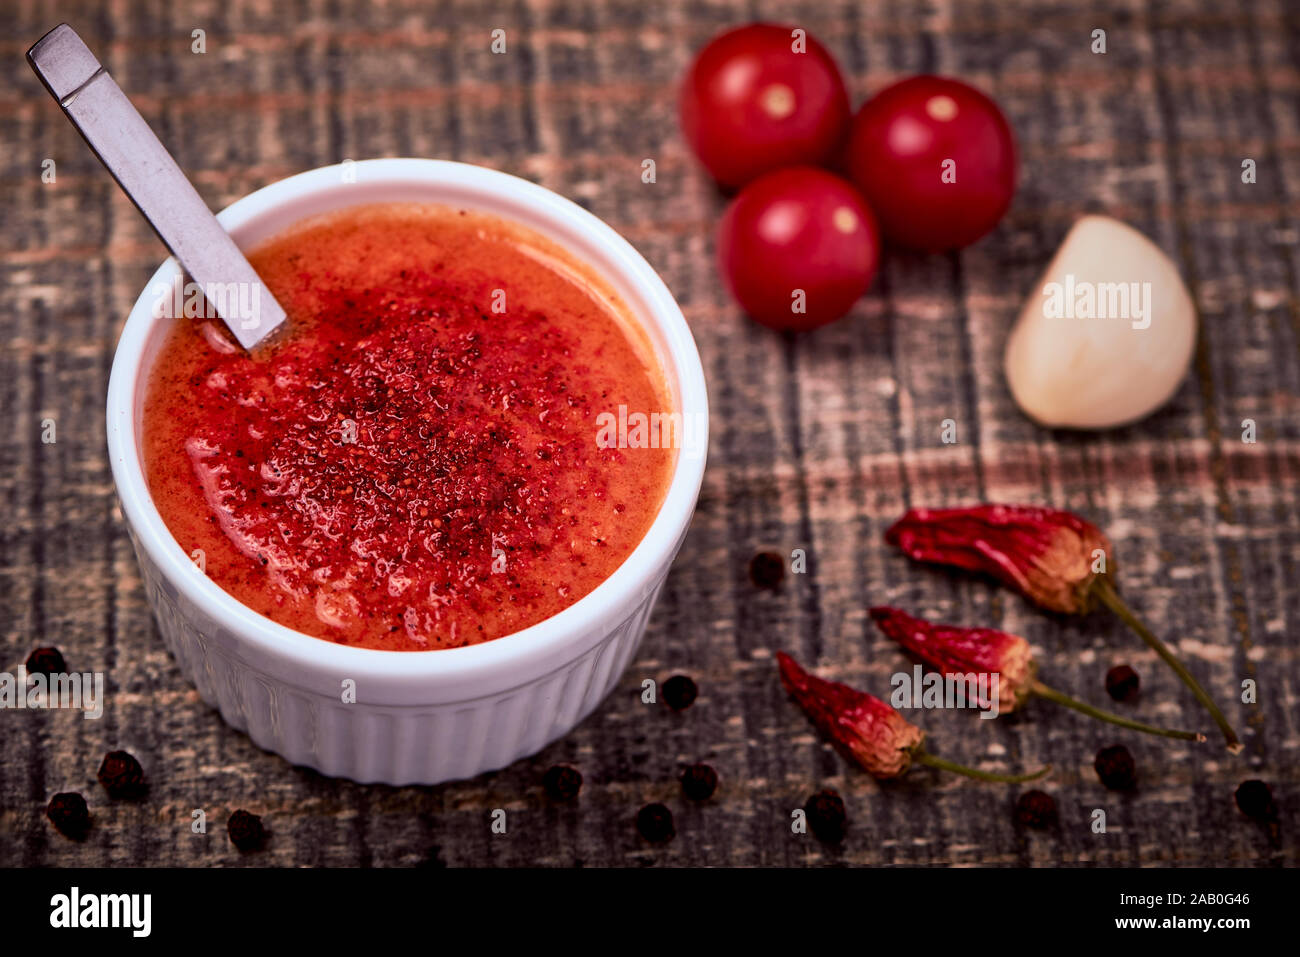 Casera deliciosa salsa de tomate picante en un tazón de porcelana hecha con tomates frescos. Close-up de un condimento americana hecha de tomates. Foto de stock